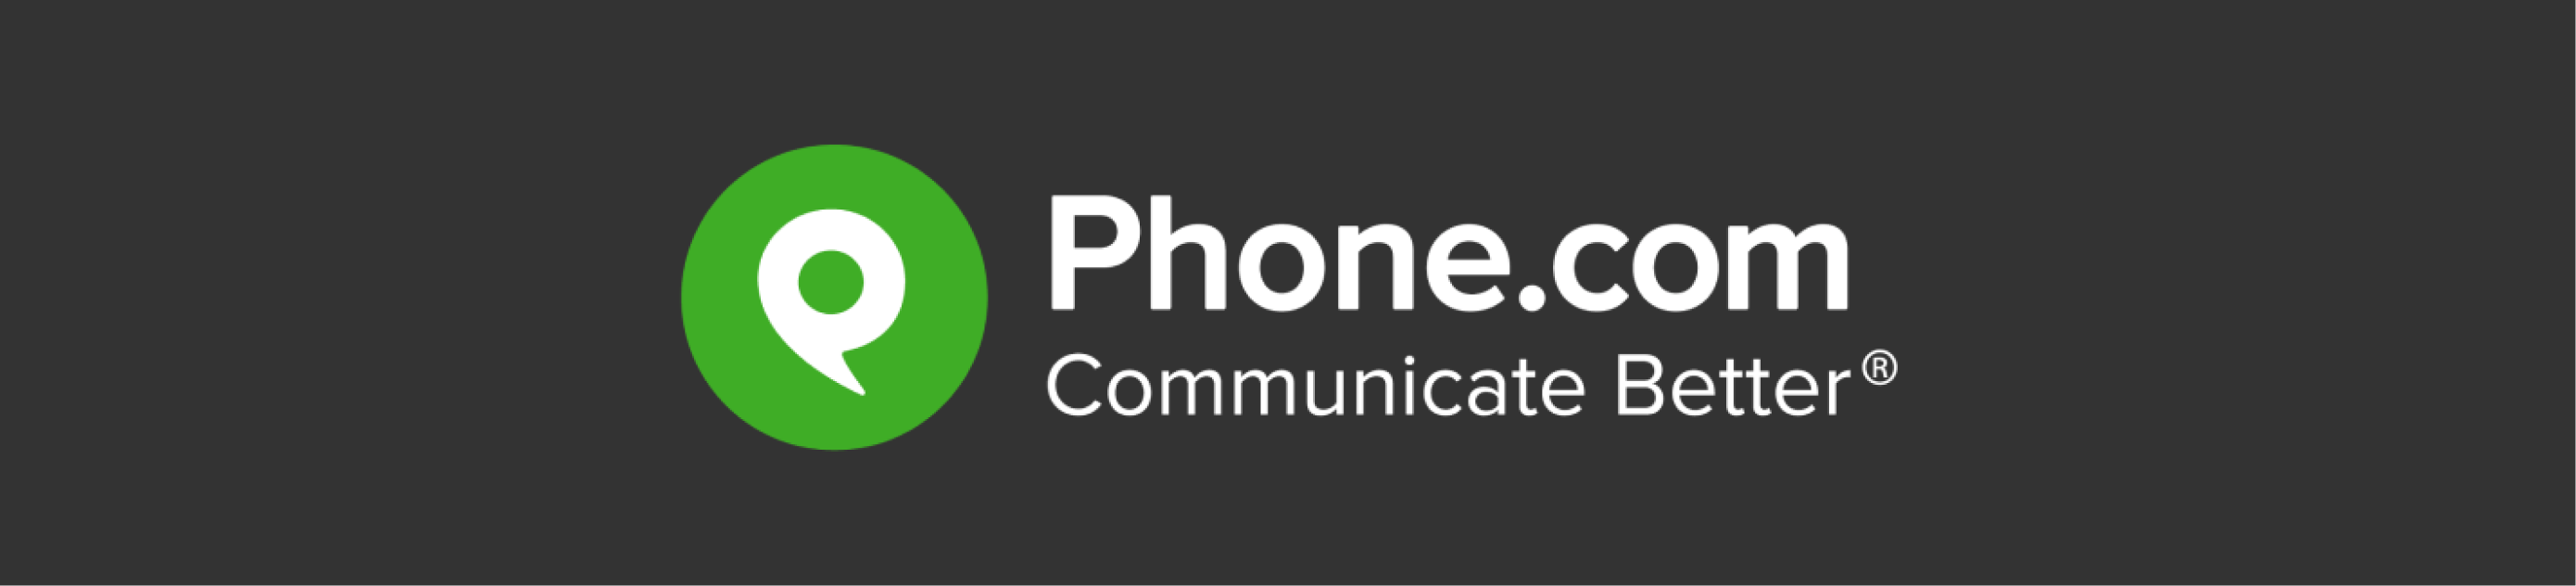 phone.com